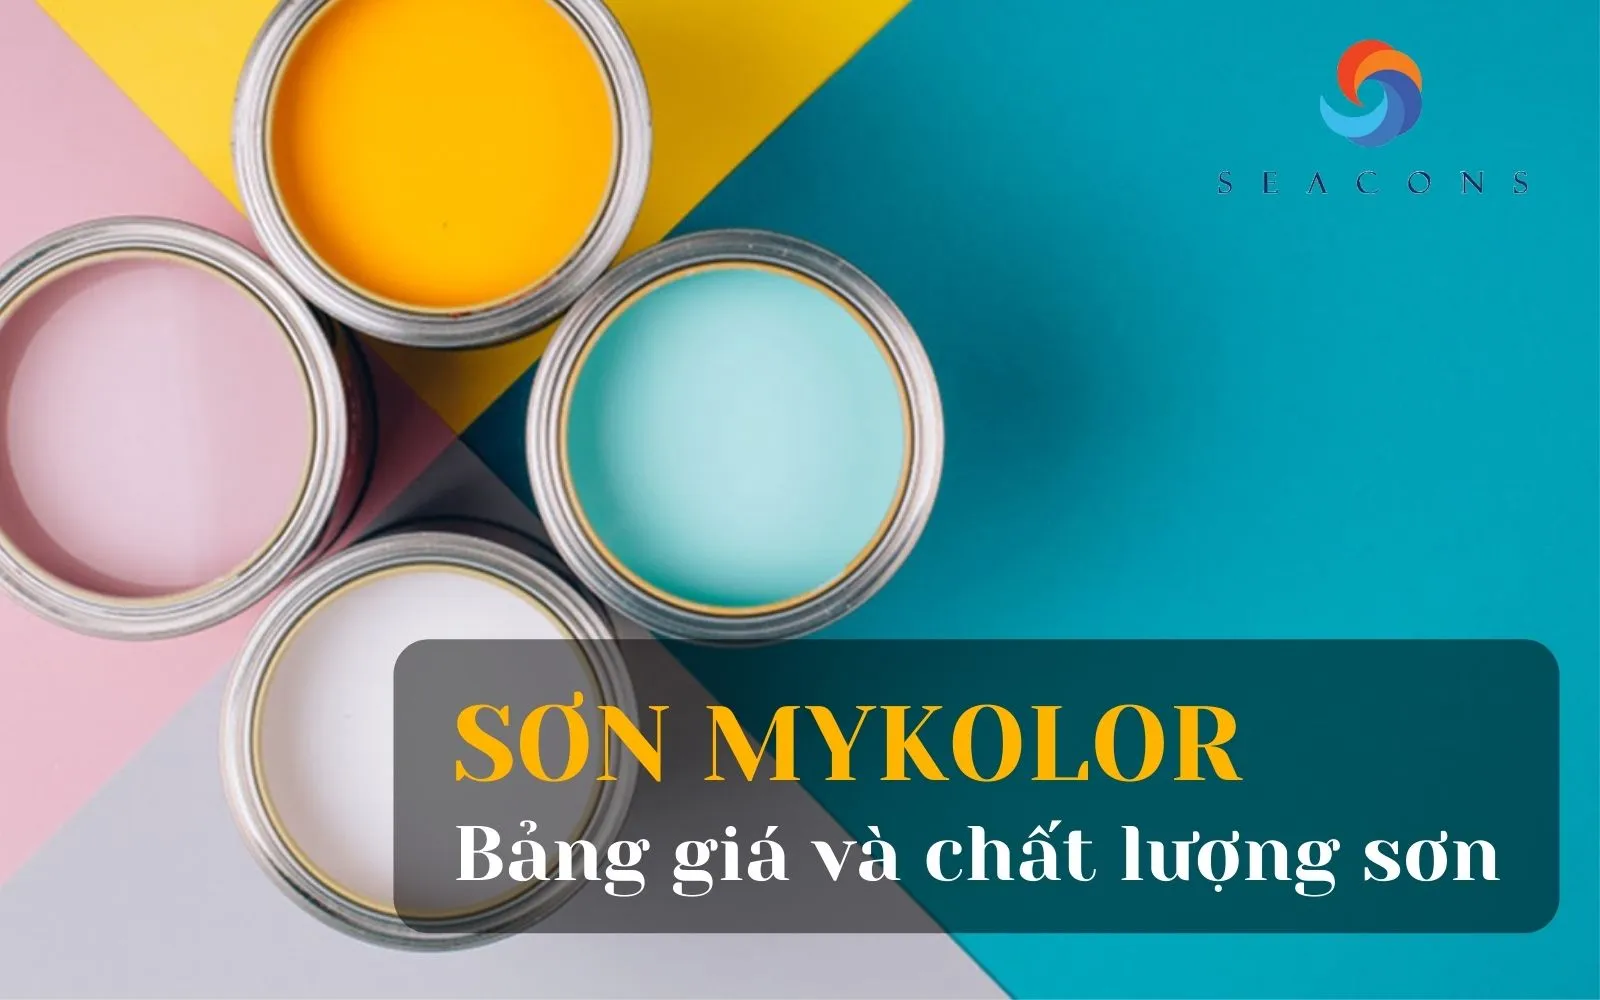 Bảng giá sơn Mykolor: Với mức giá hợp lý và chất lượng sản phẩm đảm bảo, sơn Mykolor là sự lựa chọn tuyệt vời cho công trình sơn nhà của bạn. Xem hình ảnh liên quan để biết thêm thông tin về bảng giá sơn Mykolor.